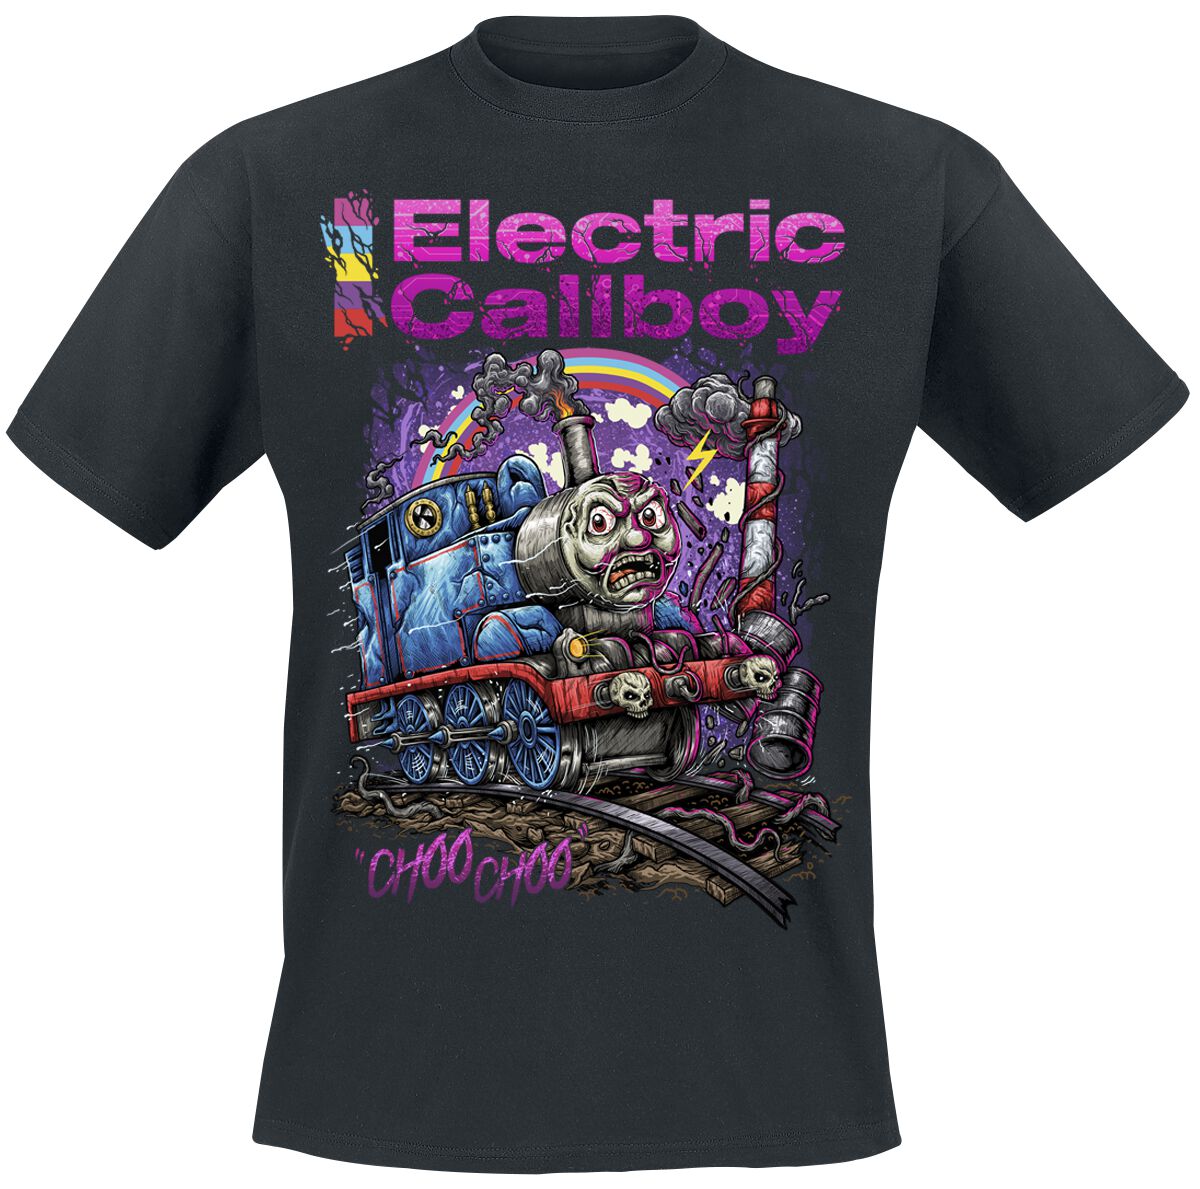 Electric Callboy T-Shirt - Choo Choo - S bis 3XL - für Männer - Größe XXL - schwarz  - Lizenziertes Merchandise!